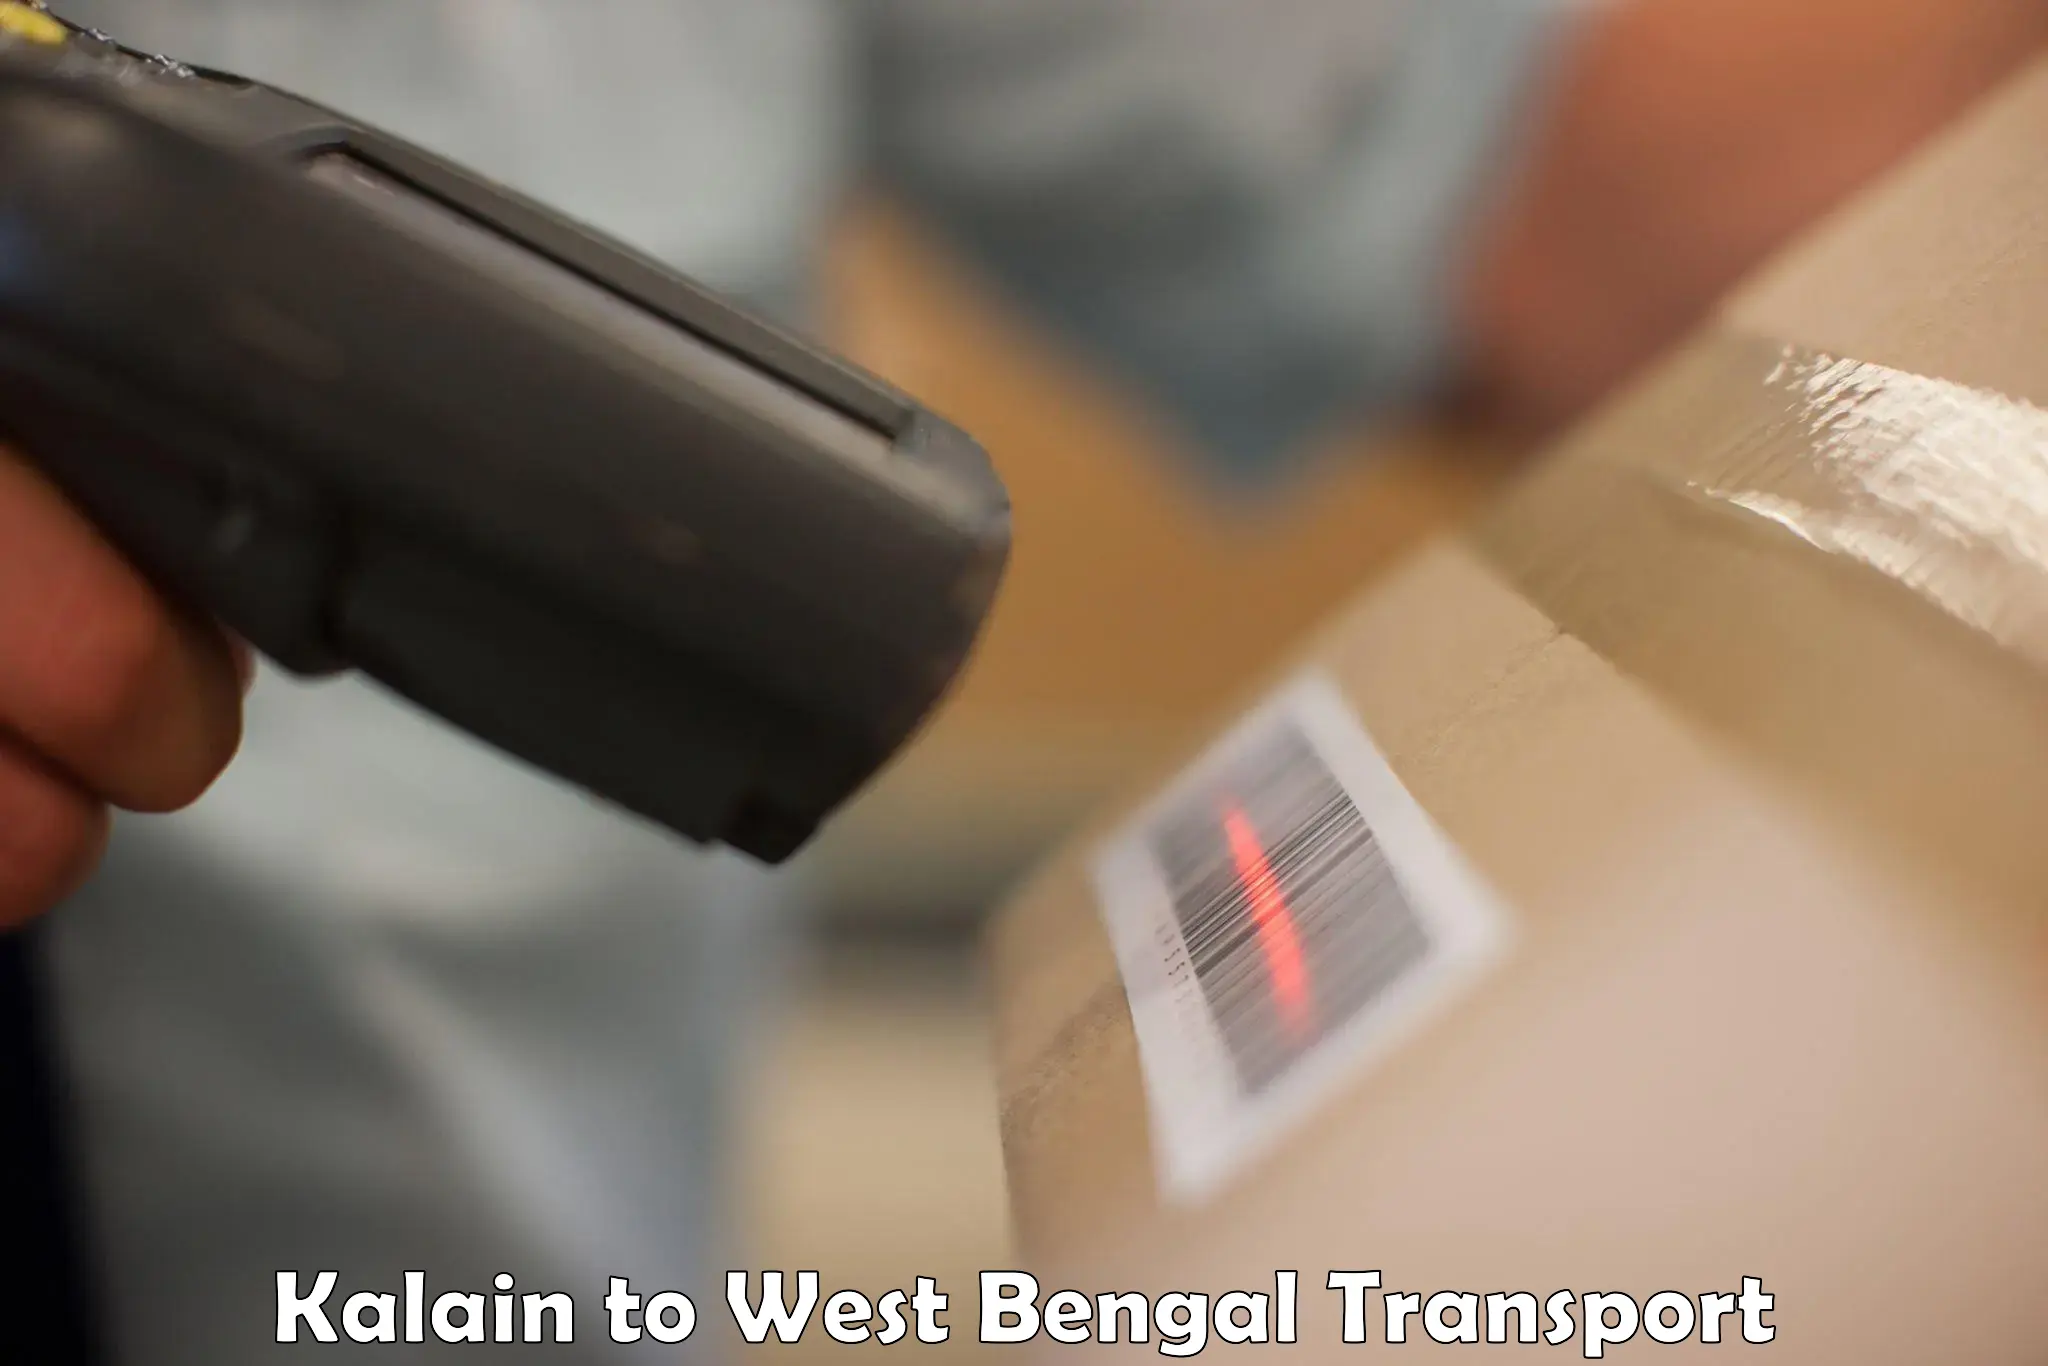 Interstate transport services Kalain to Calcutta University Kolkata